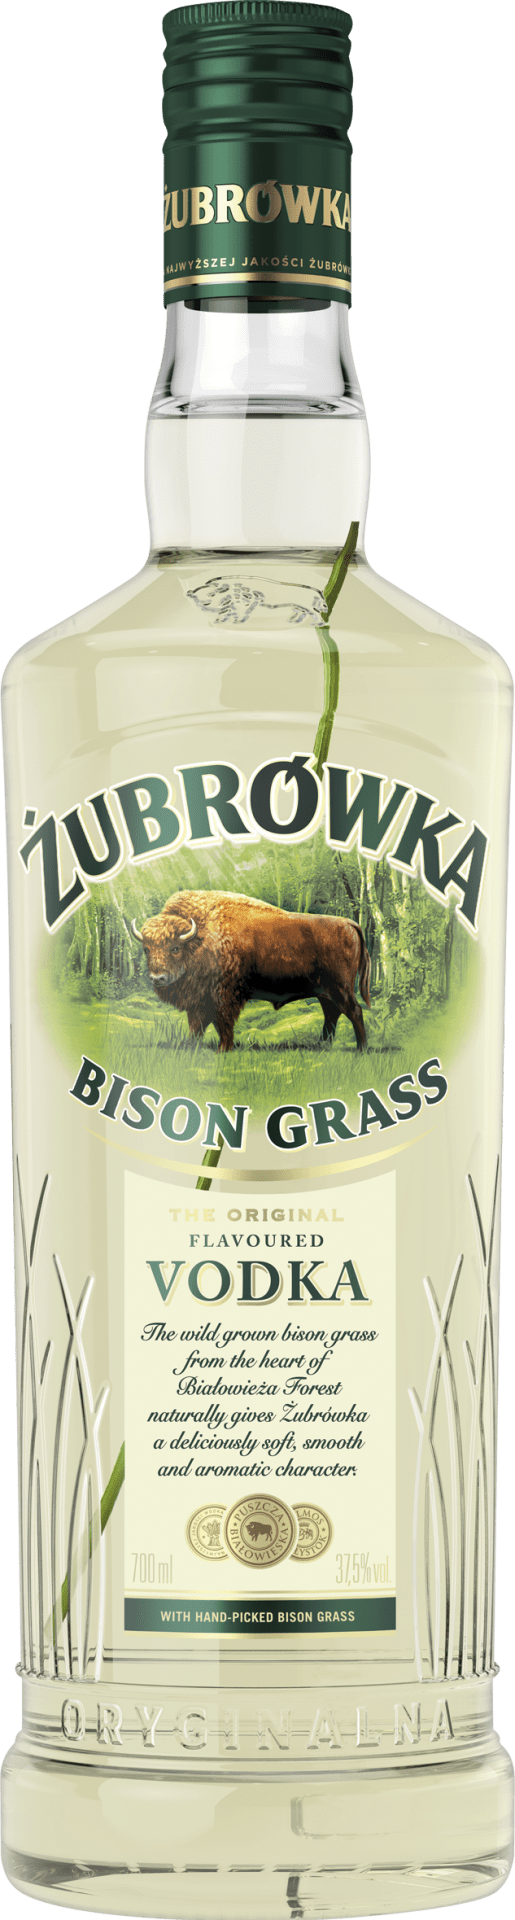 Zubrowka Bison Grass